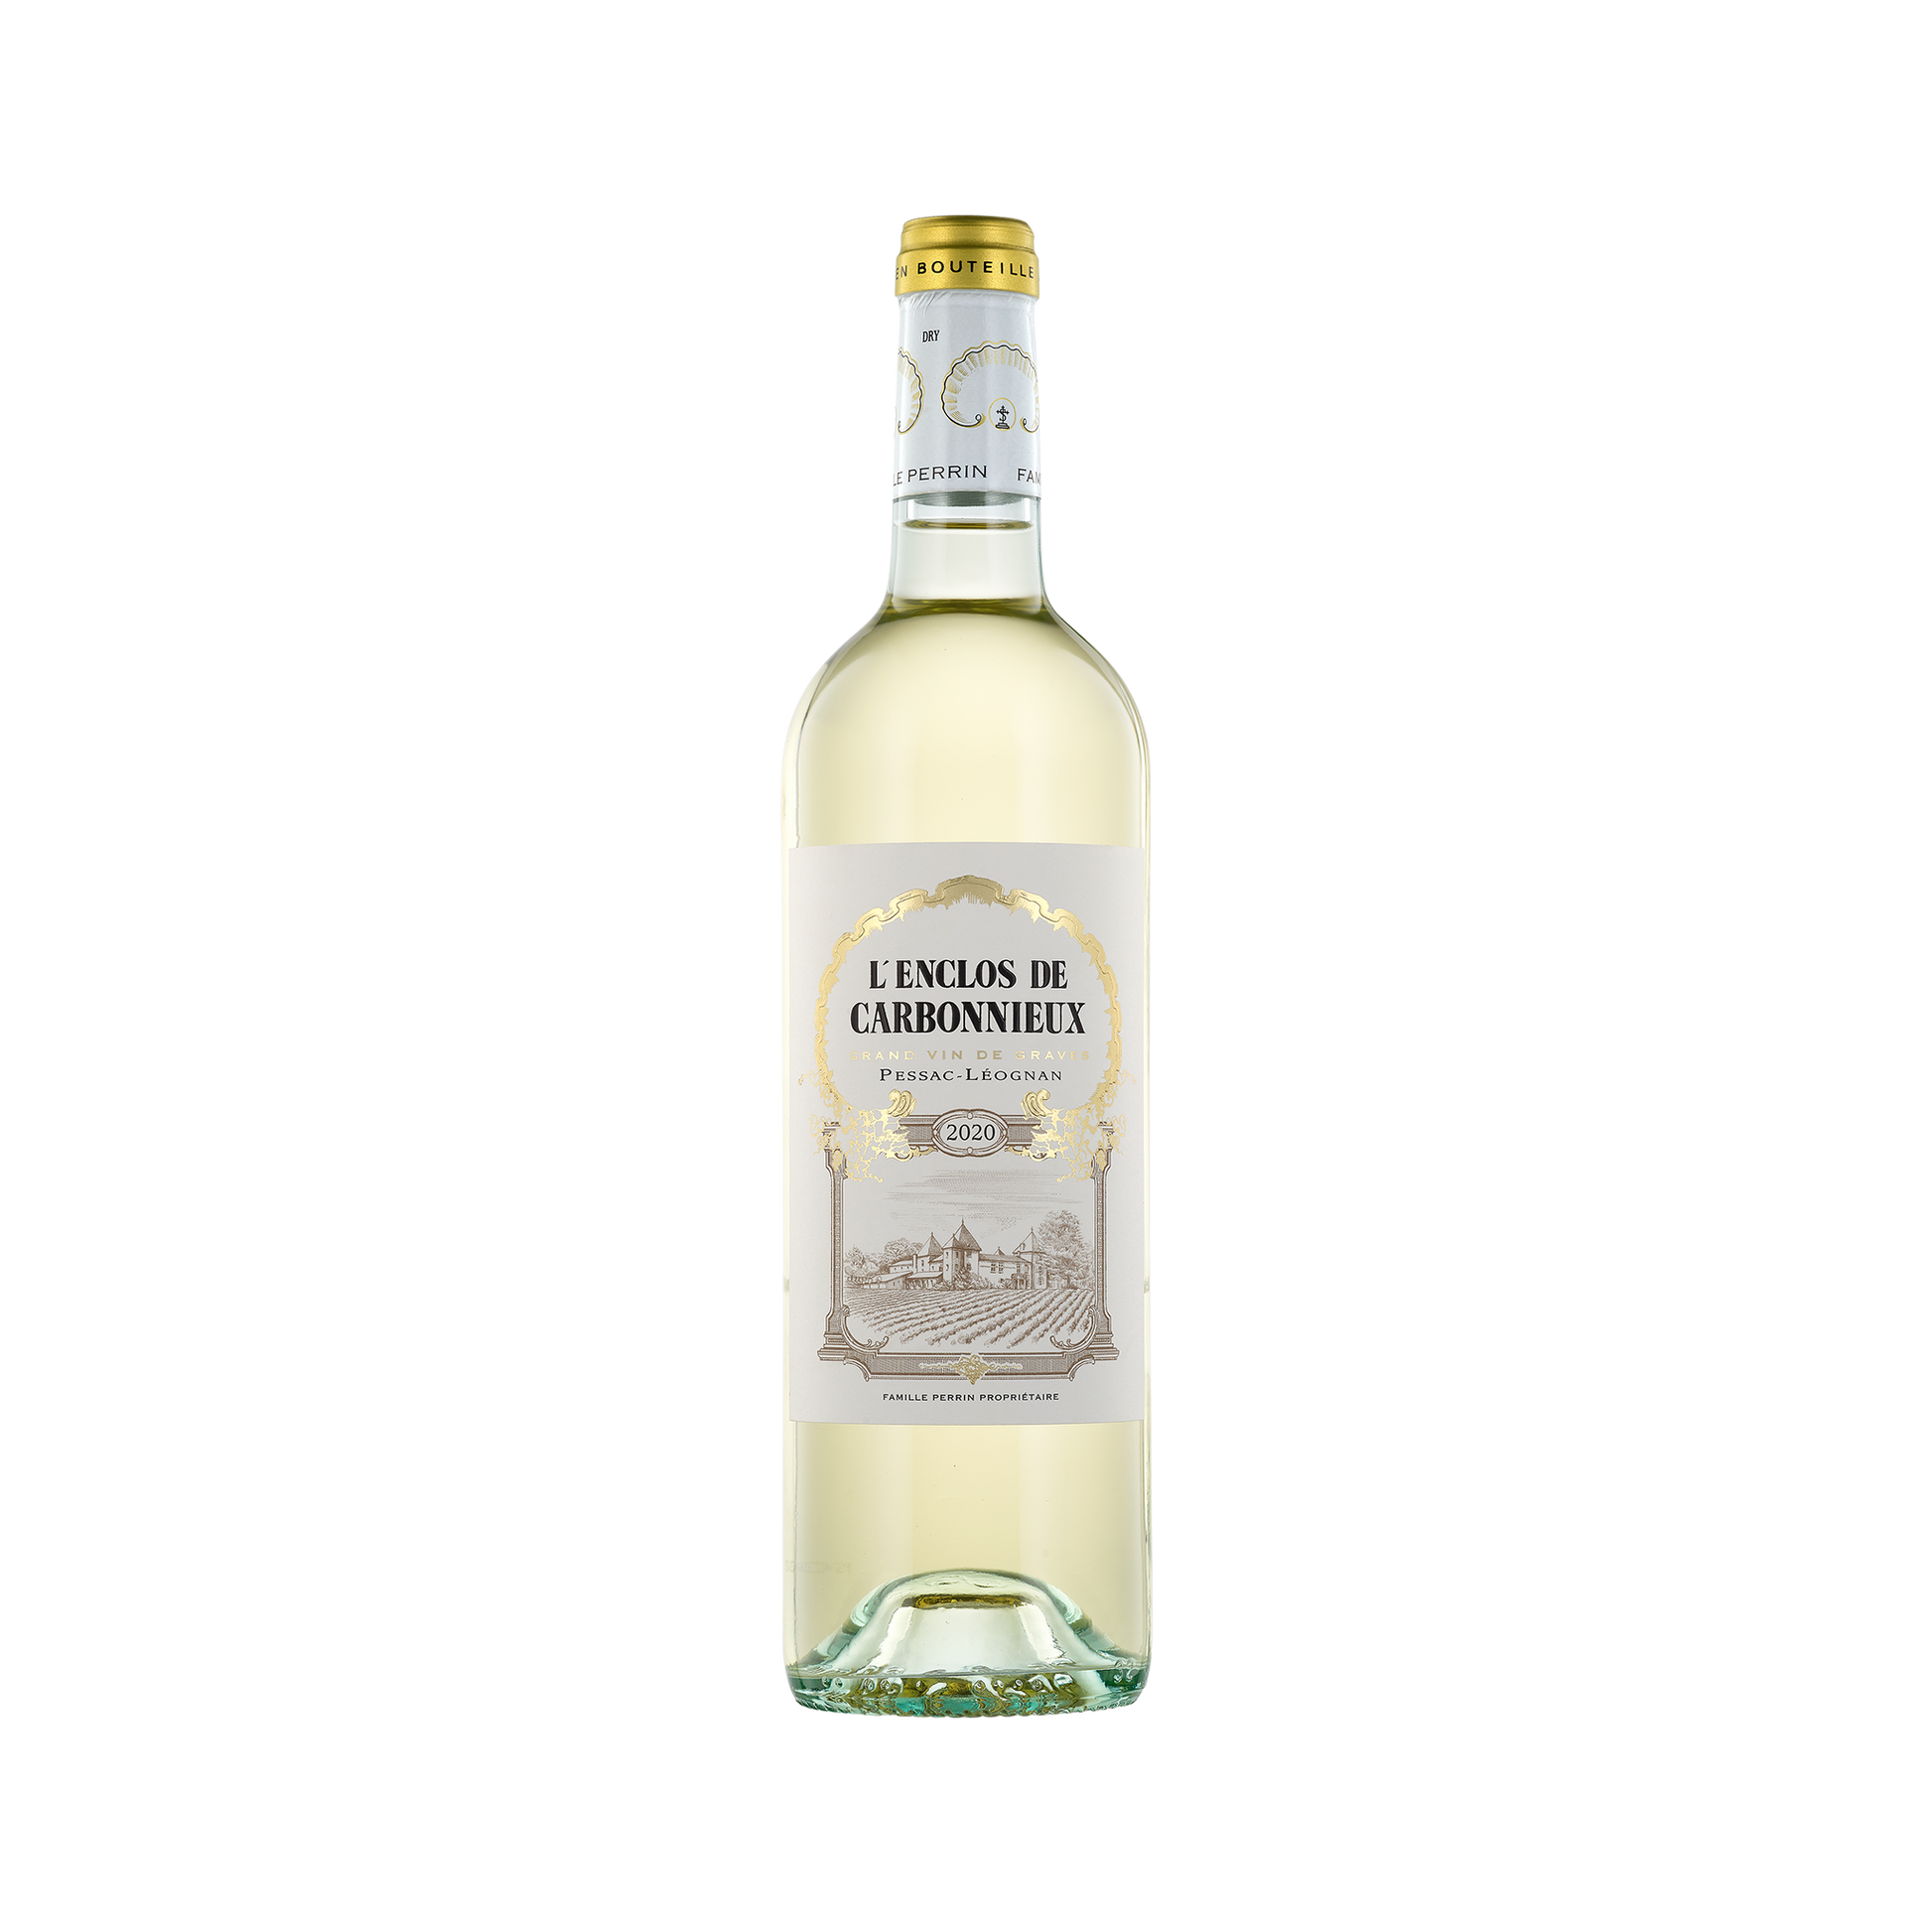 A bottle of L'Enclos de Carbonnieux 2020 Blanc